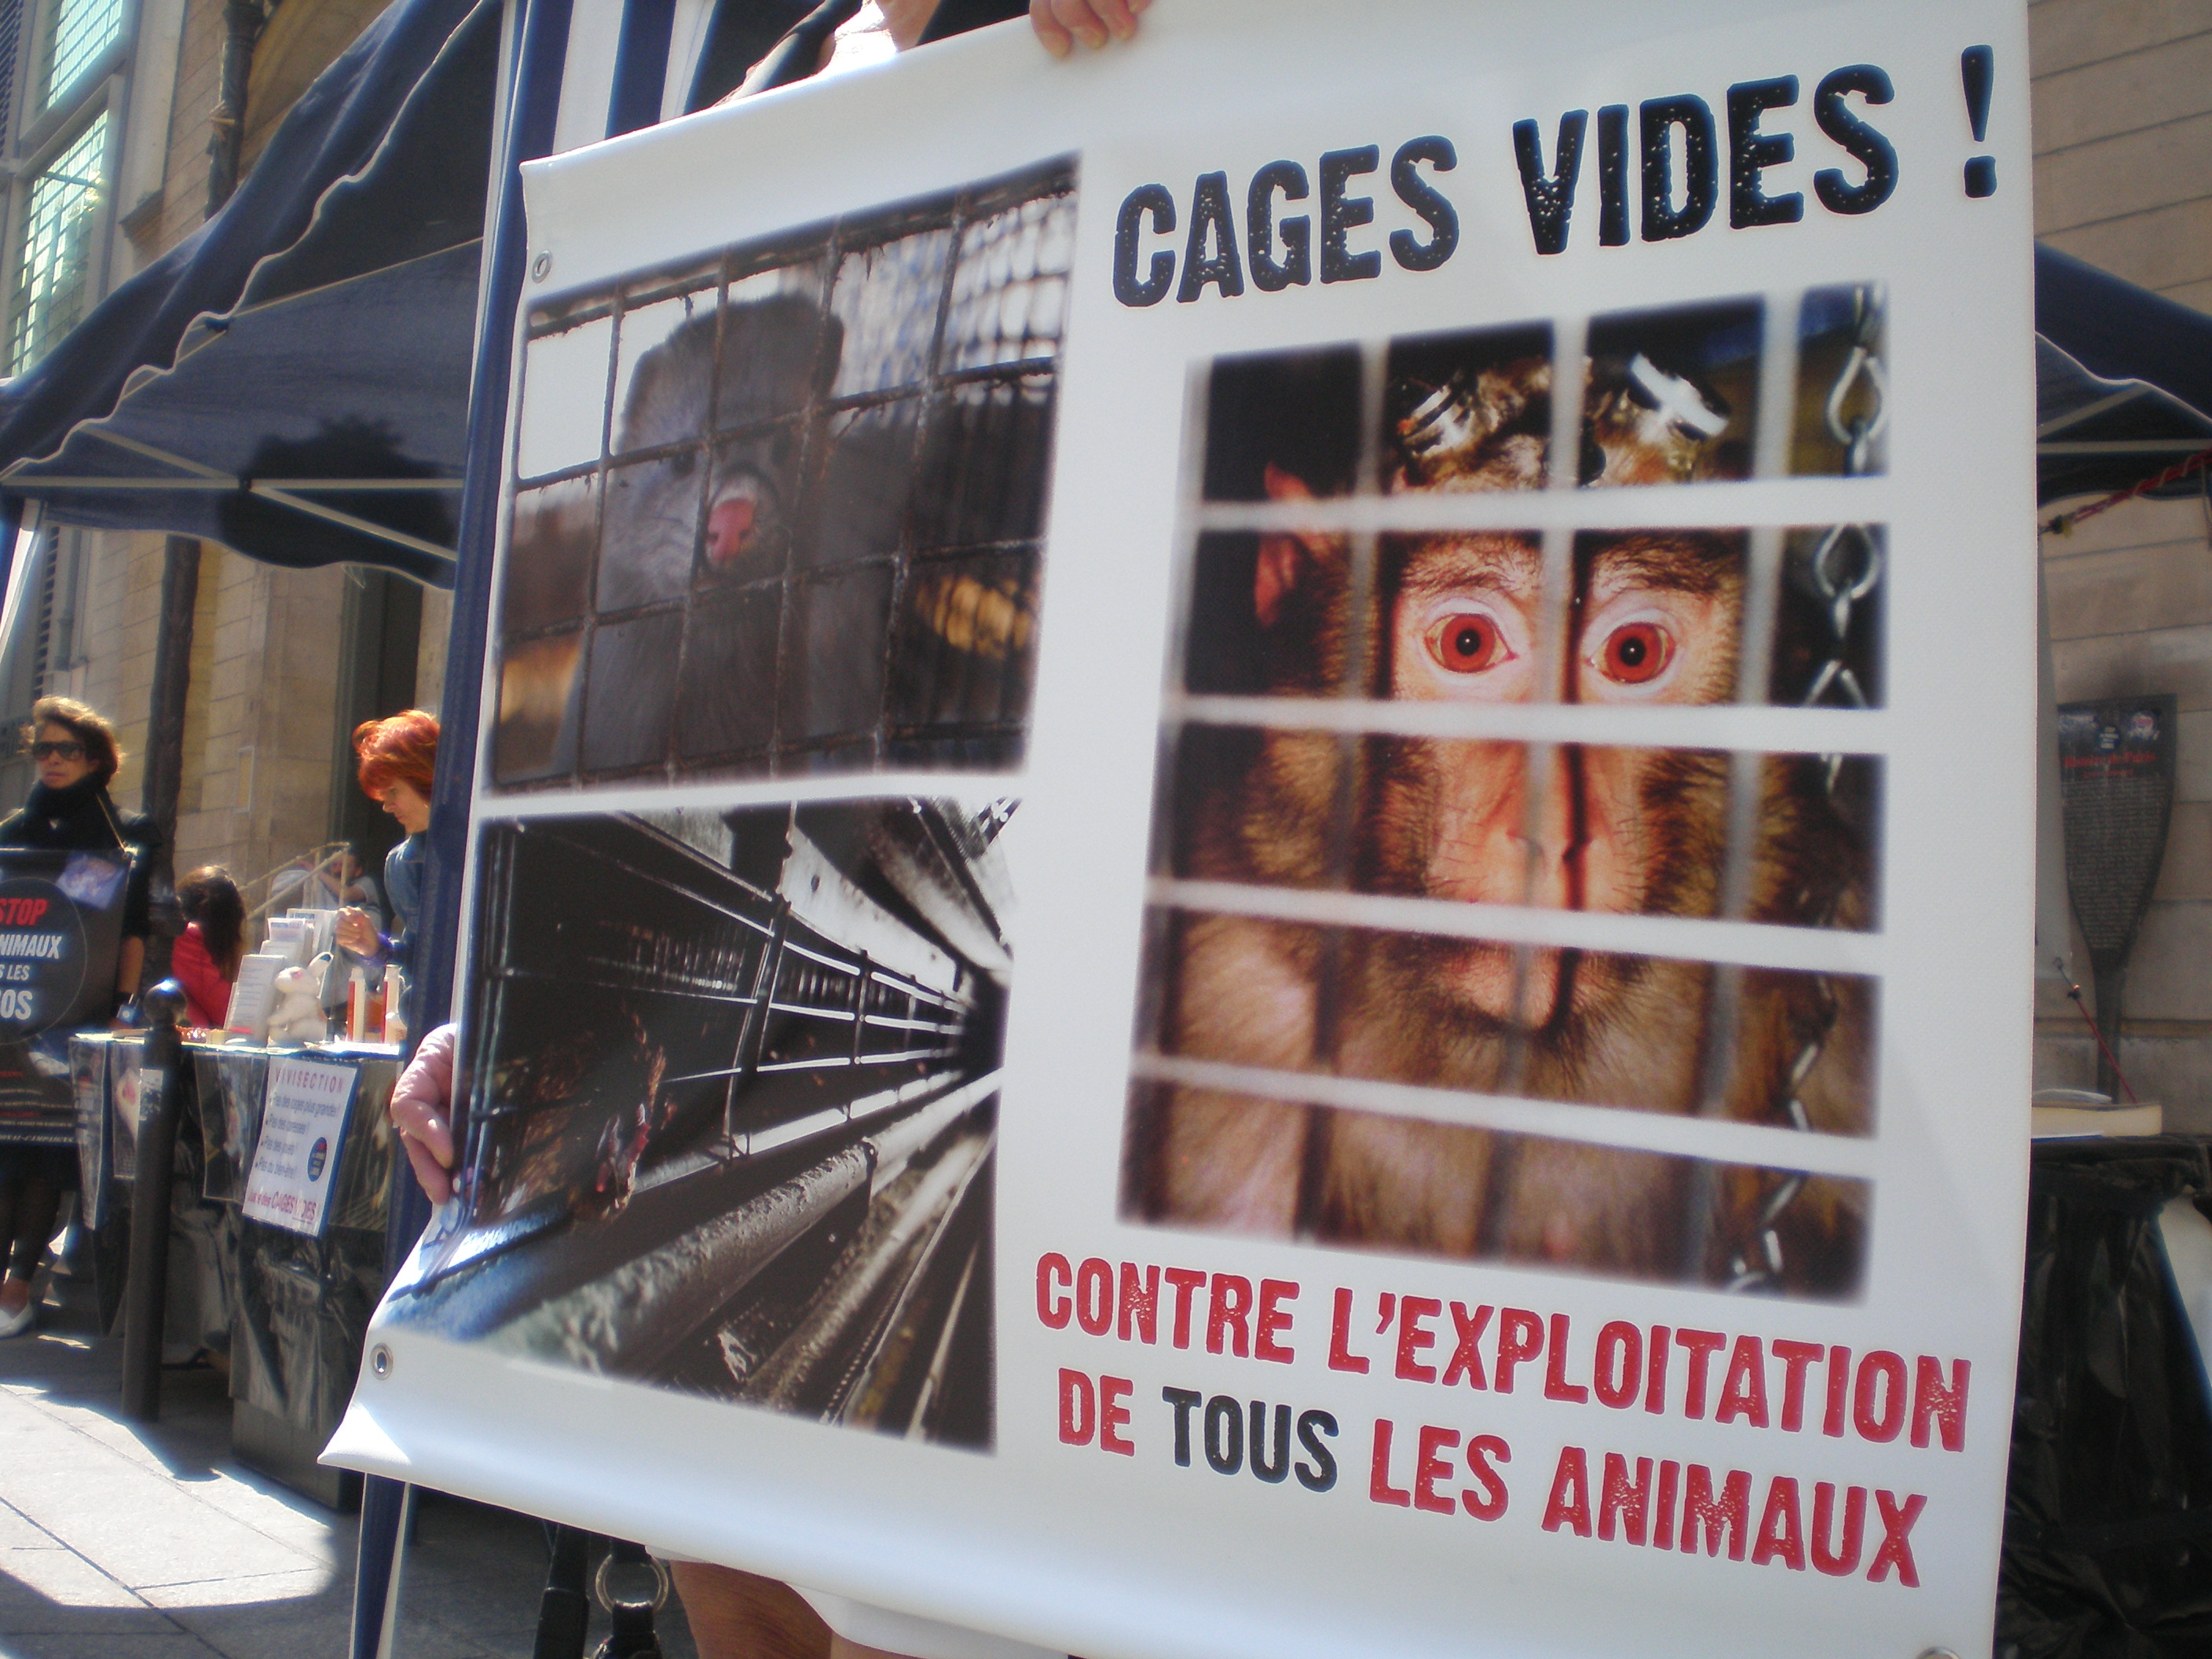 Paris – Samedi 20 septembre 2014 – Stand de sensibilisation aux droits des animaux et contre la vivisection